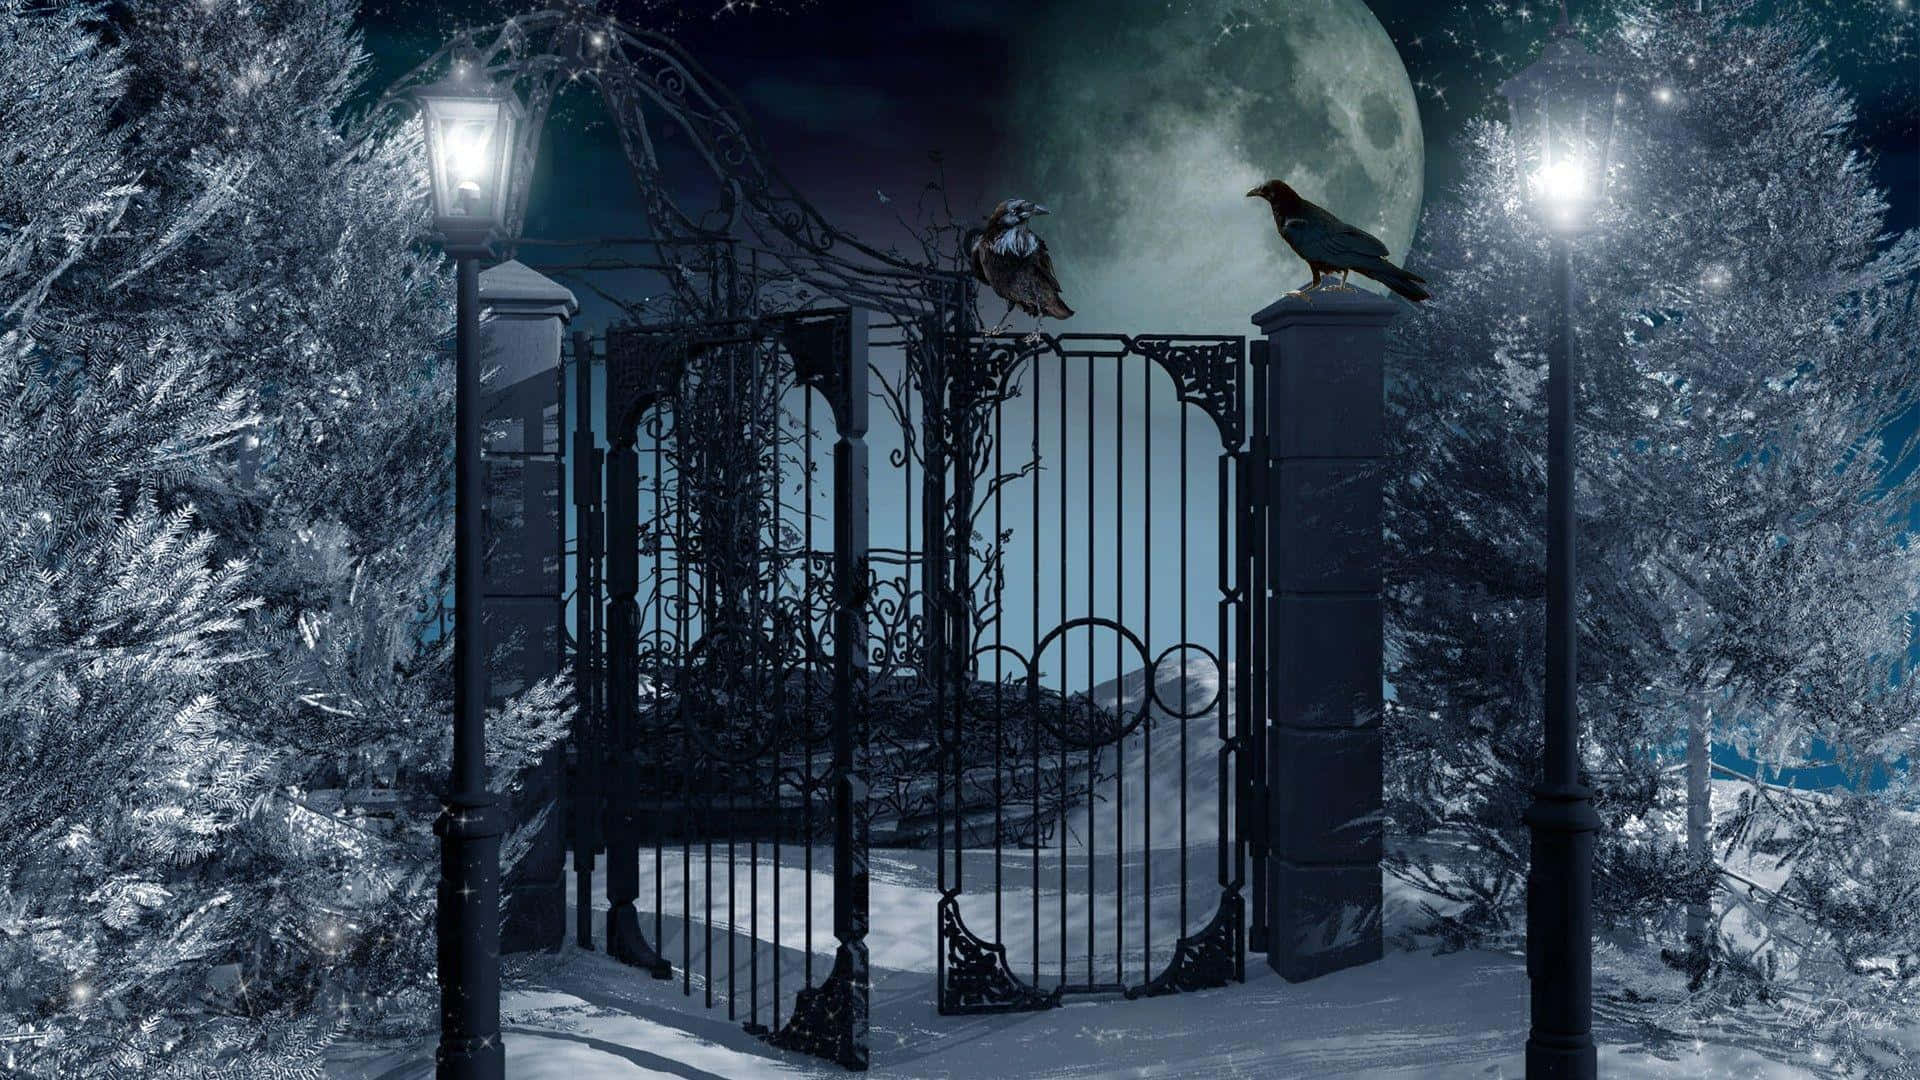 Imagende La Noche, La Luna Y La Puerta Negra.